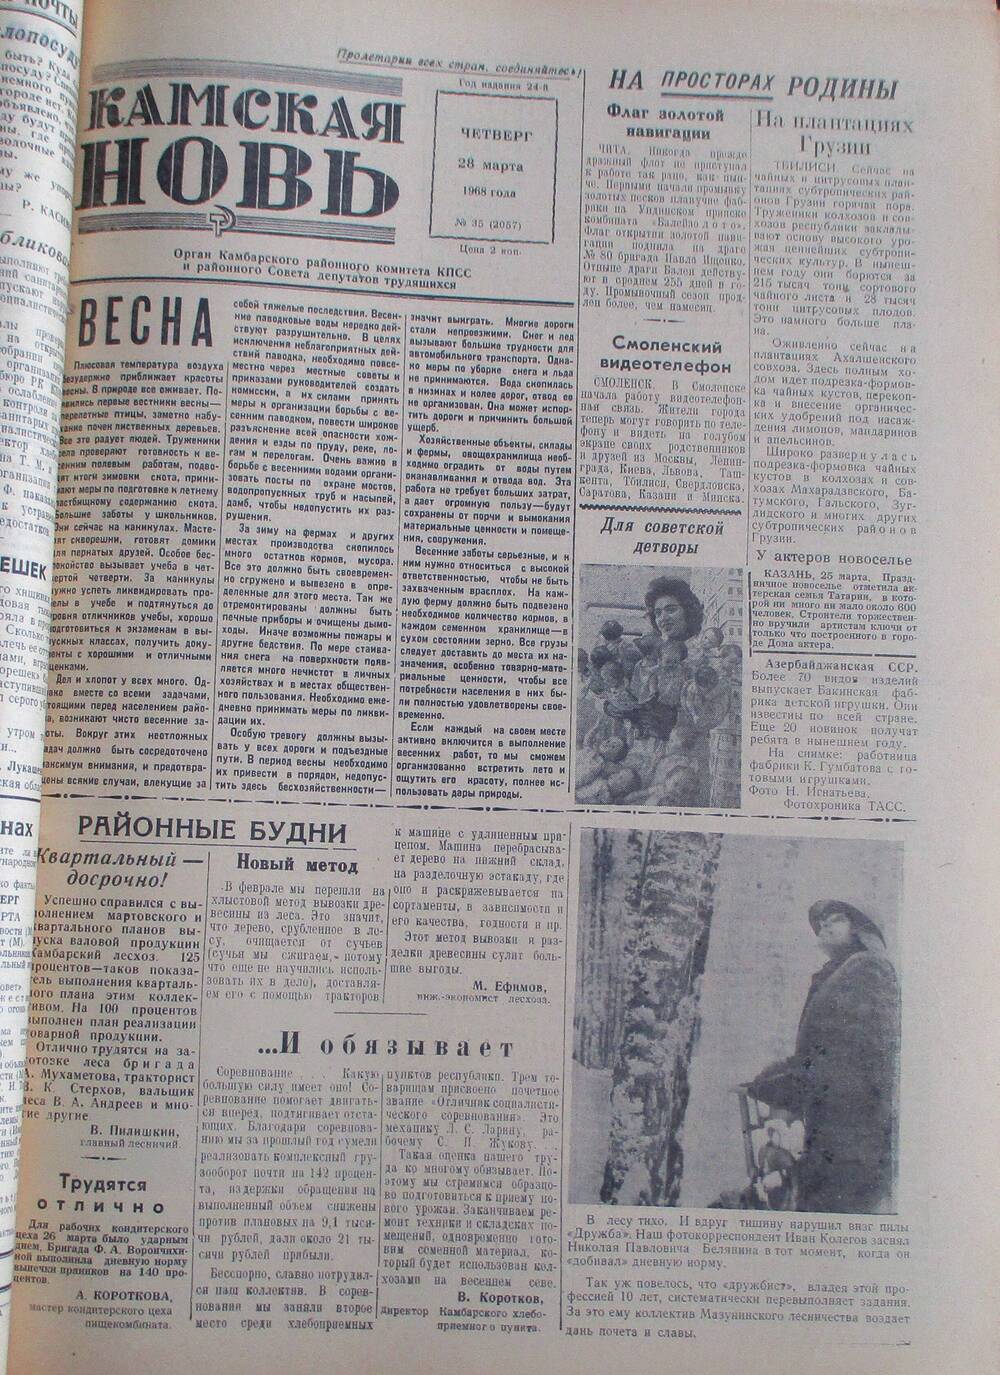 Газета Камская новь за 1968 год, орган Камбарского Райсовета и РККПСС, подшивка с №1 по №150, №35.